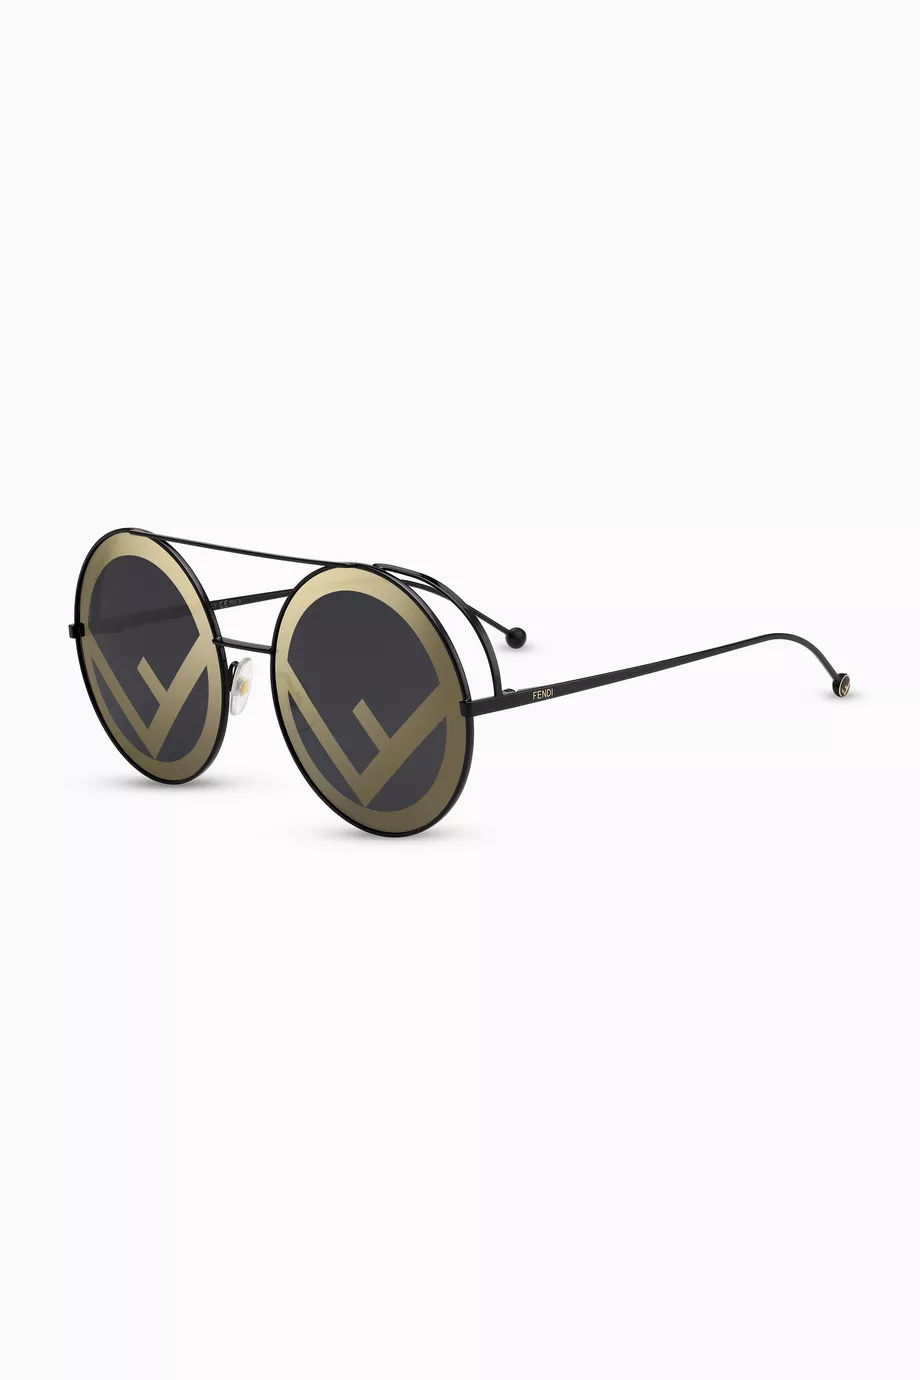 Fendirama Round Sunglasses